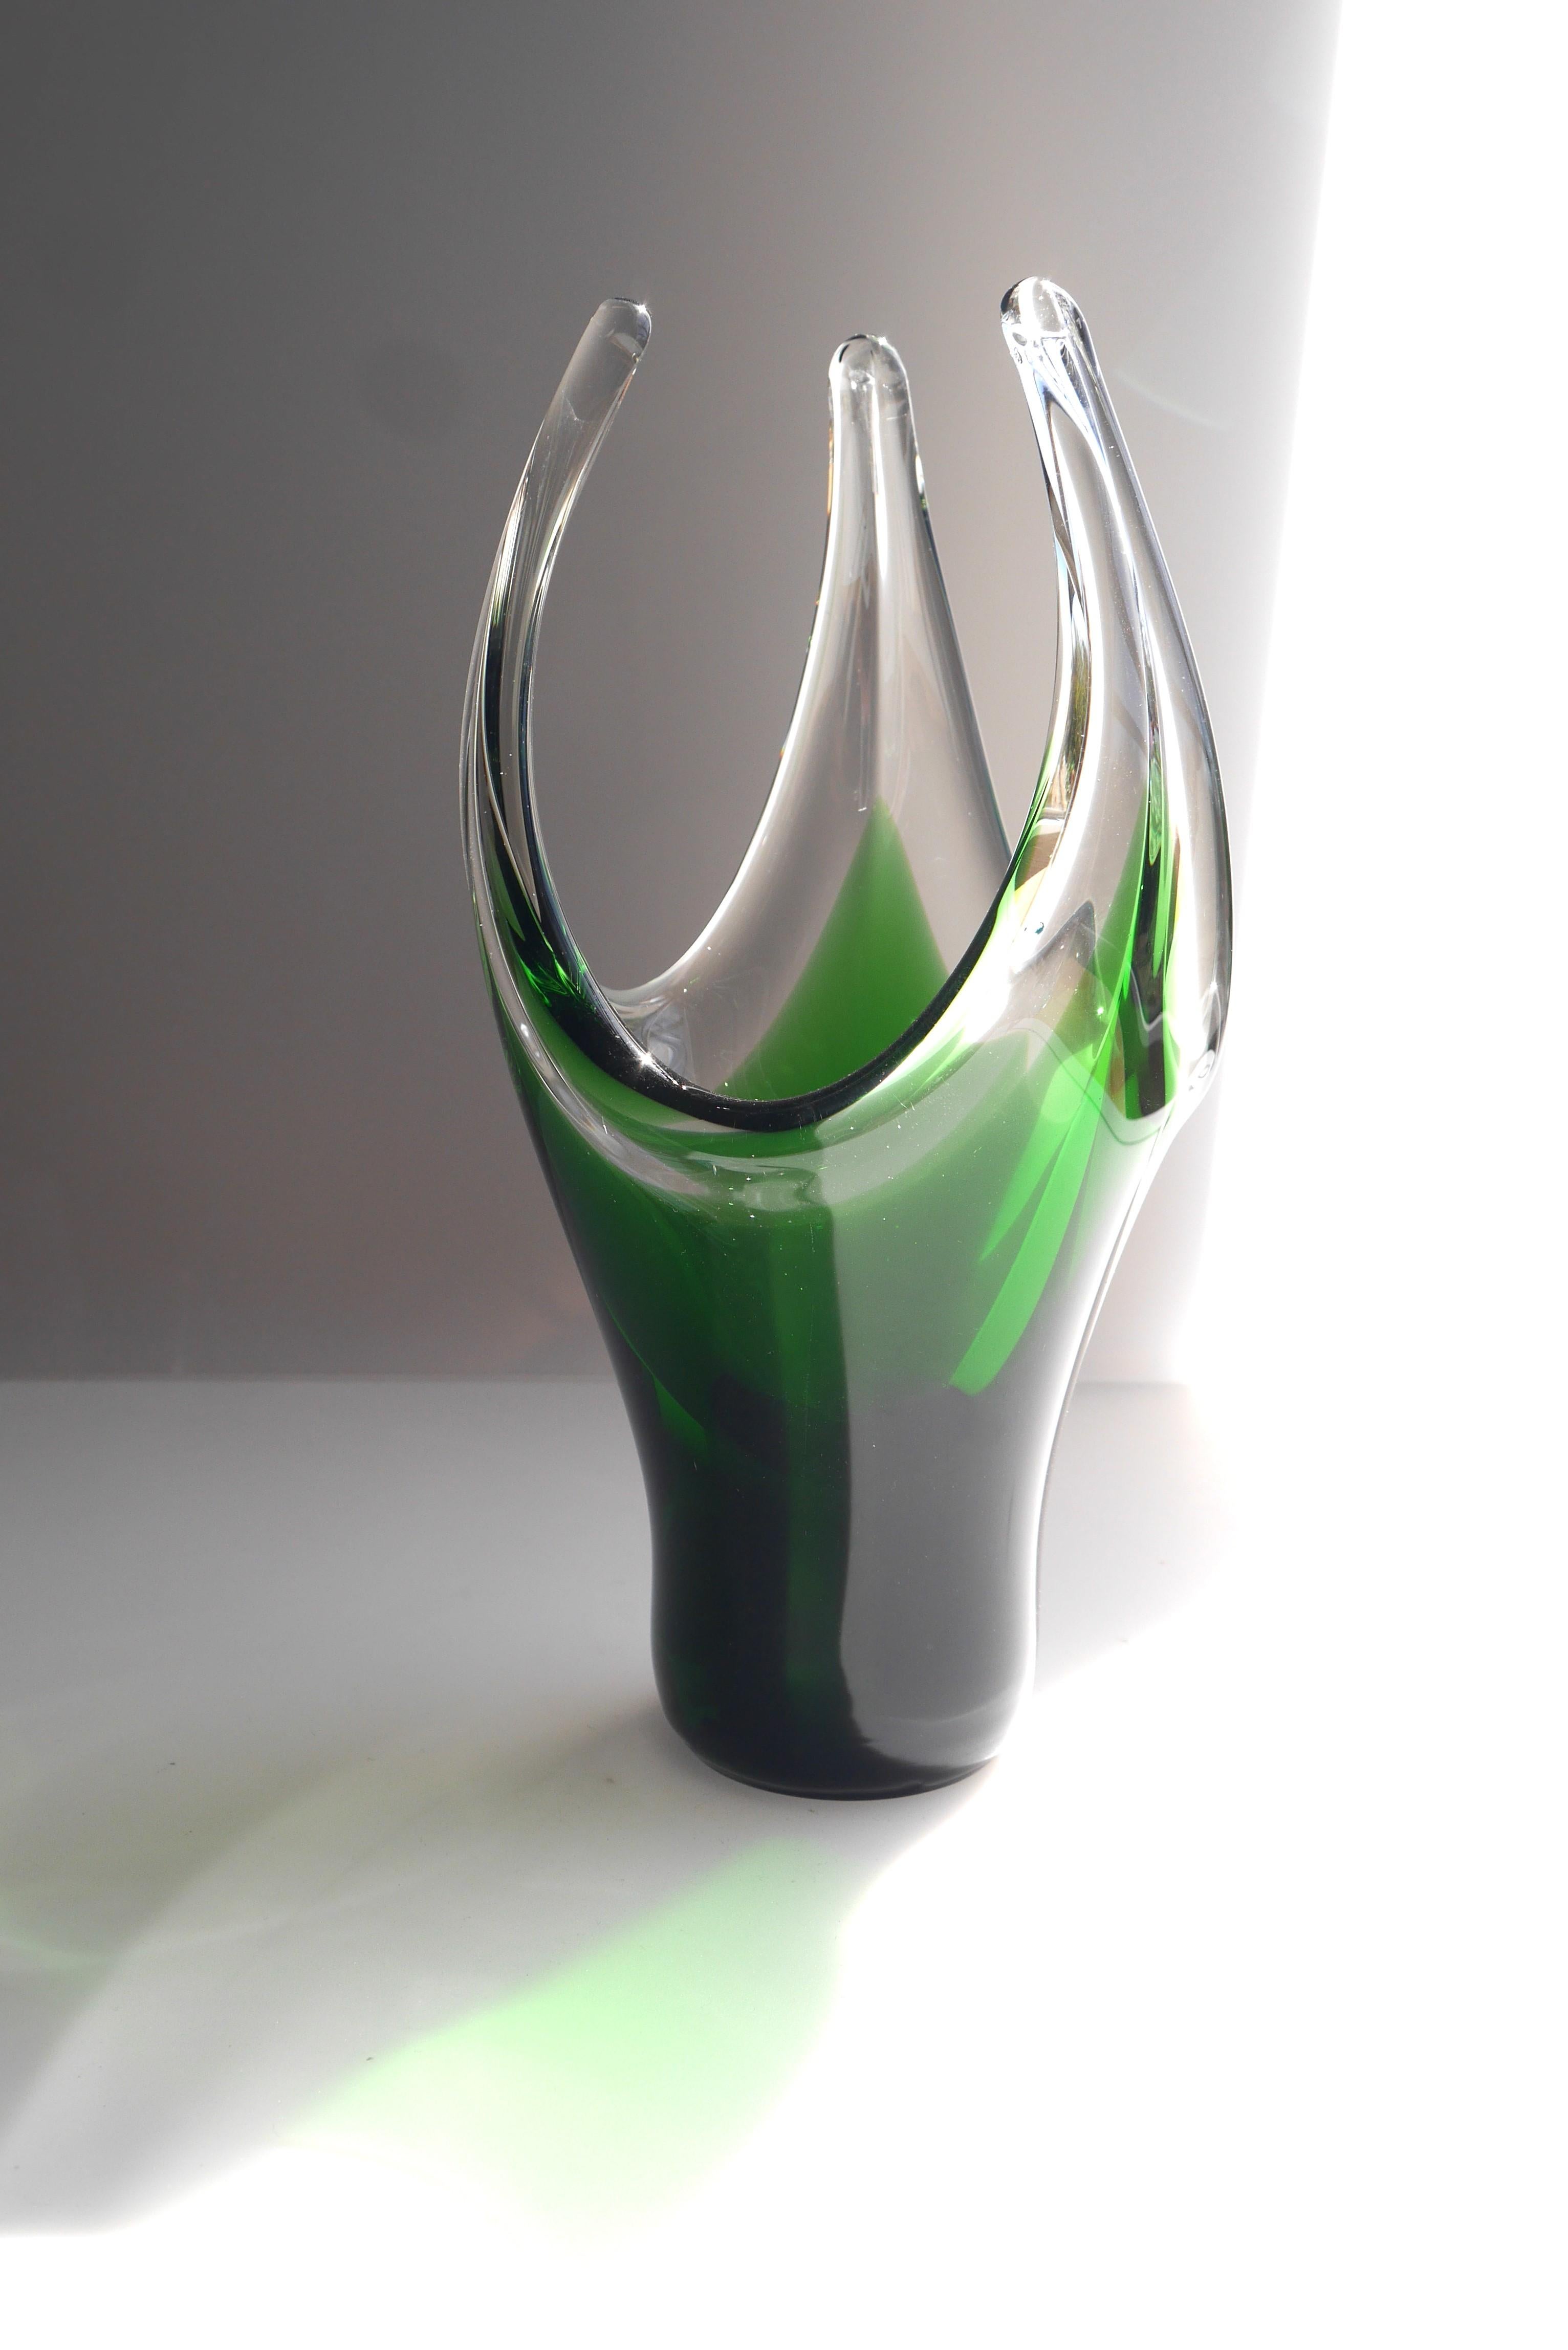 Un fantastique vase en verre vert émeraude fait à la main et signé par le maître du cristal Jan Johansson pour Orrefors, Suède. Années 1950 - 1960. Ce vase a une forme fantastique, mais c'est sa couleur étonnante qui en fait une pièce de choix. Le